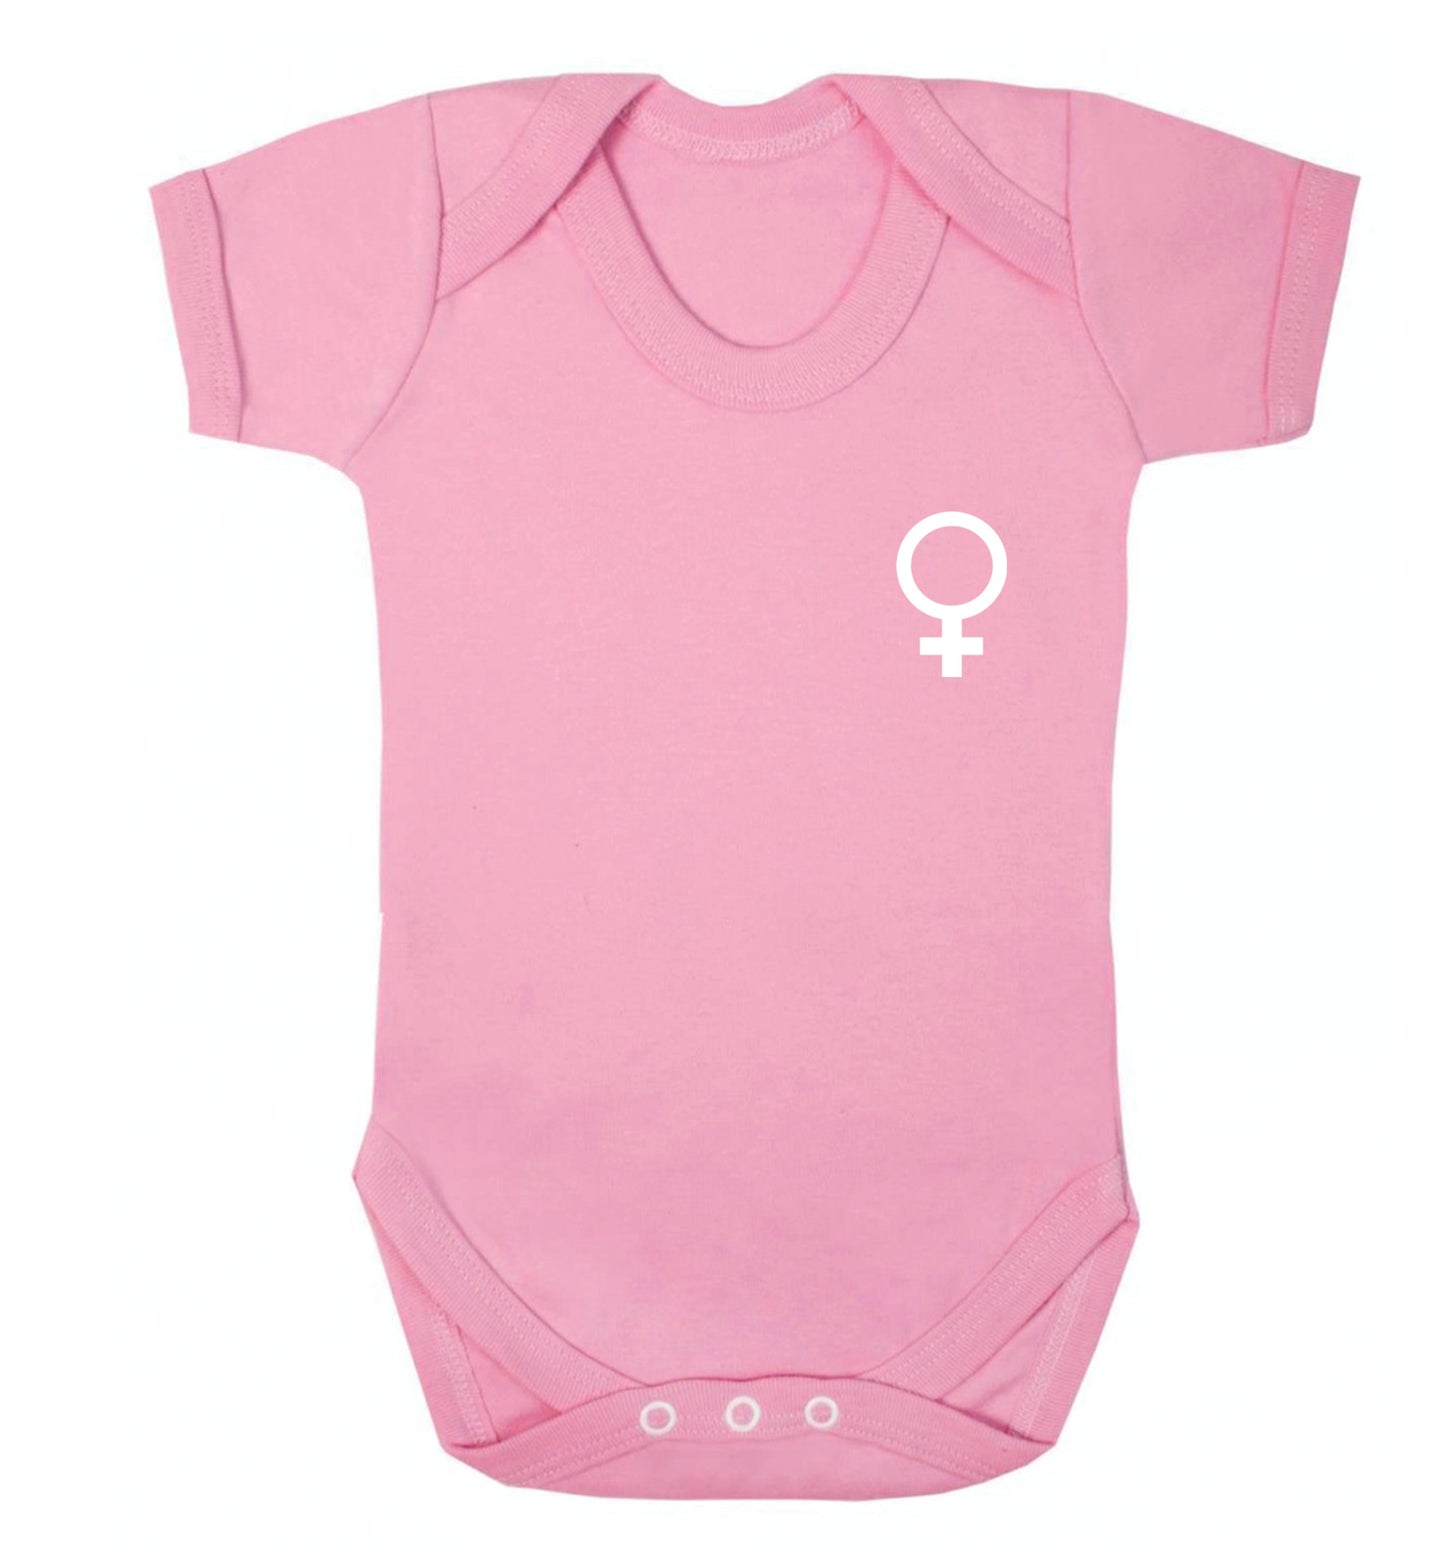 Female pocket symbol Baby Vest pale pink 18-24 months